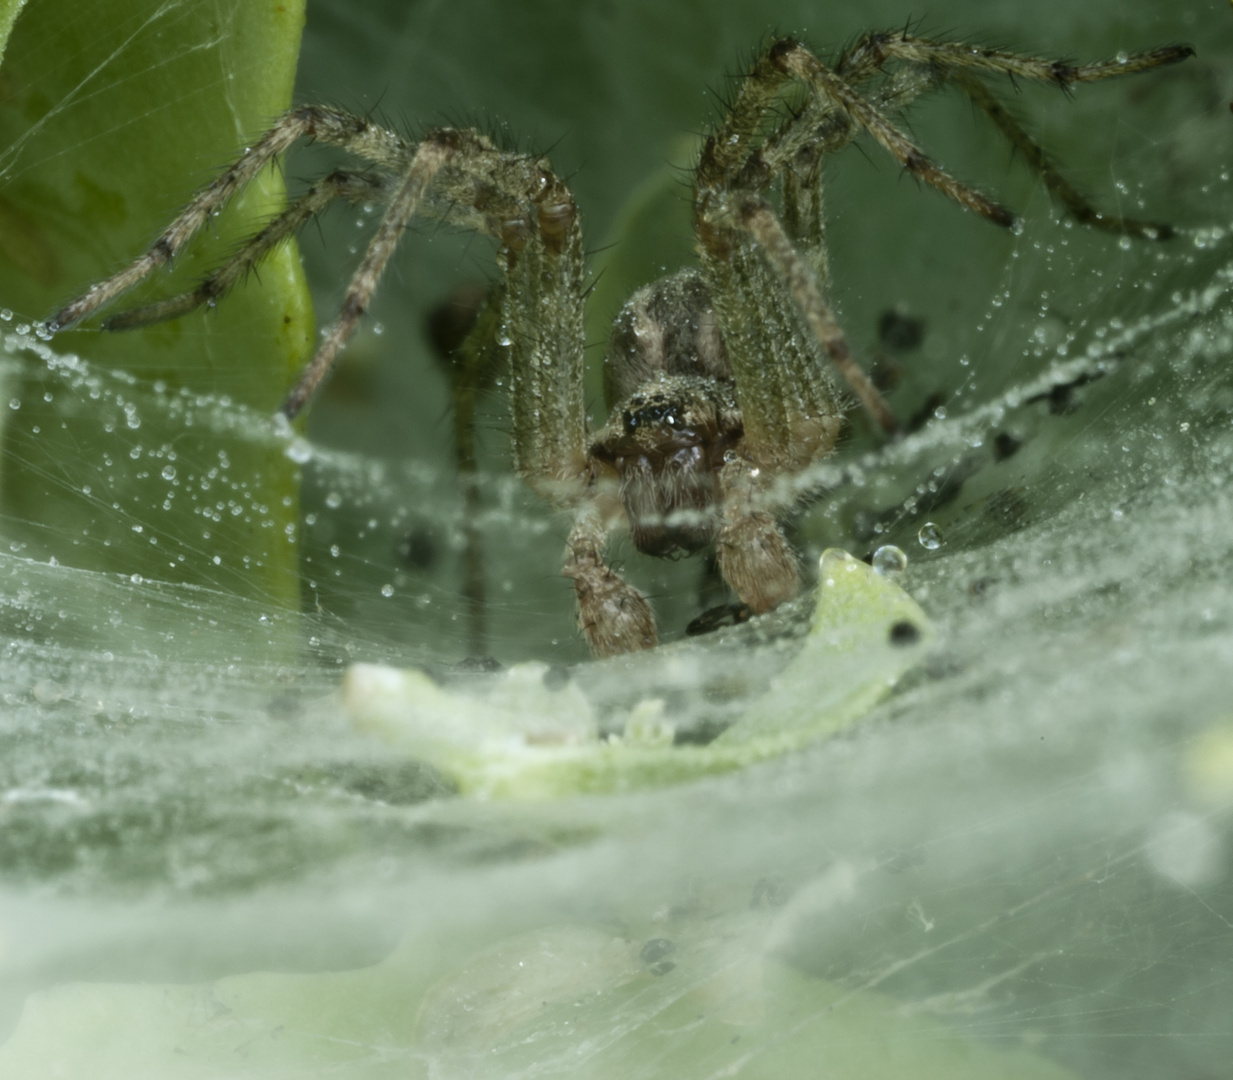 Spider III [Agelenidae (Trichternetzspinne)]